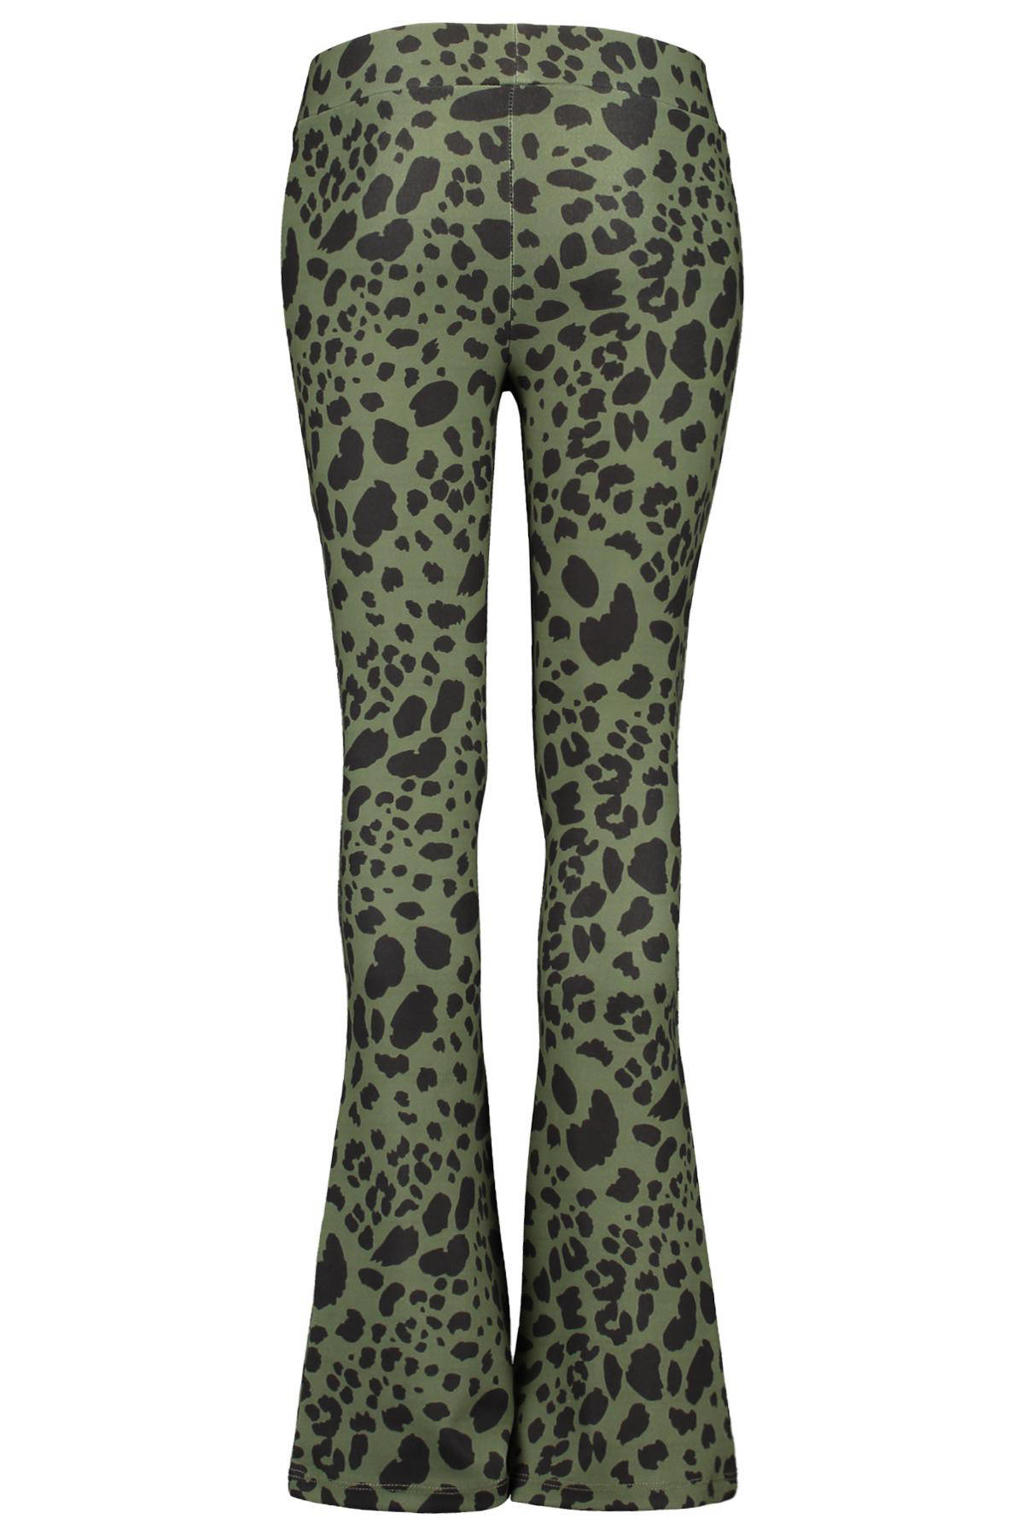 Groen en zwarte meisjes CoolCat Junior flared broek Philou army 34 inch van polyester met regular waist en panterprint